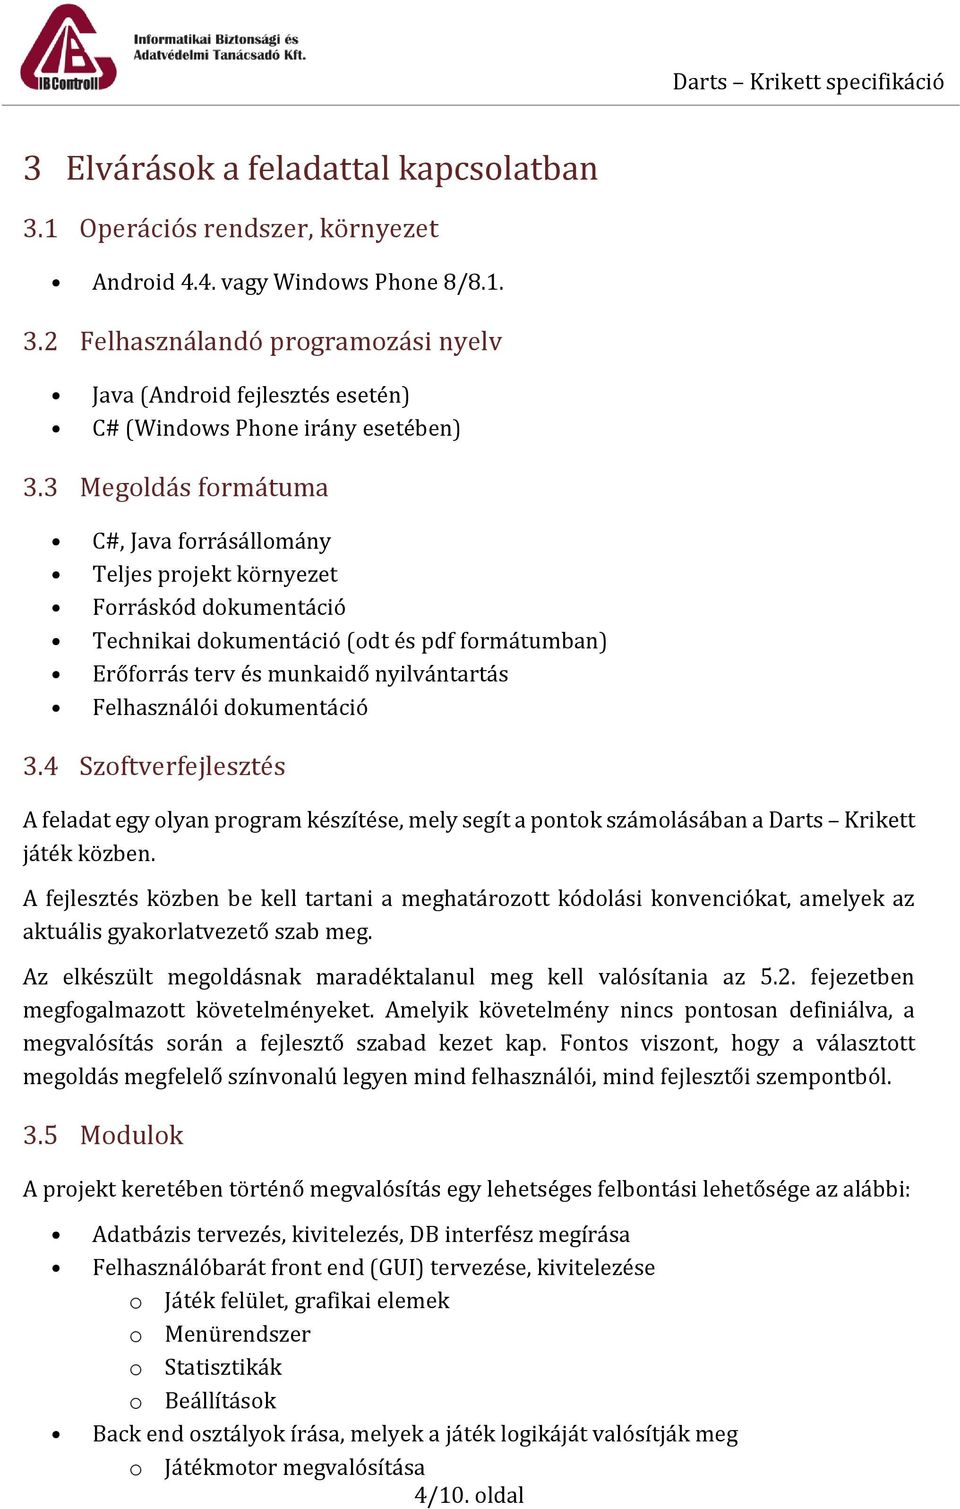 Darts - Krikett Projekt feladat specifikáció - PDF Free Download